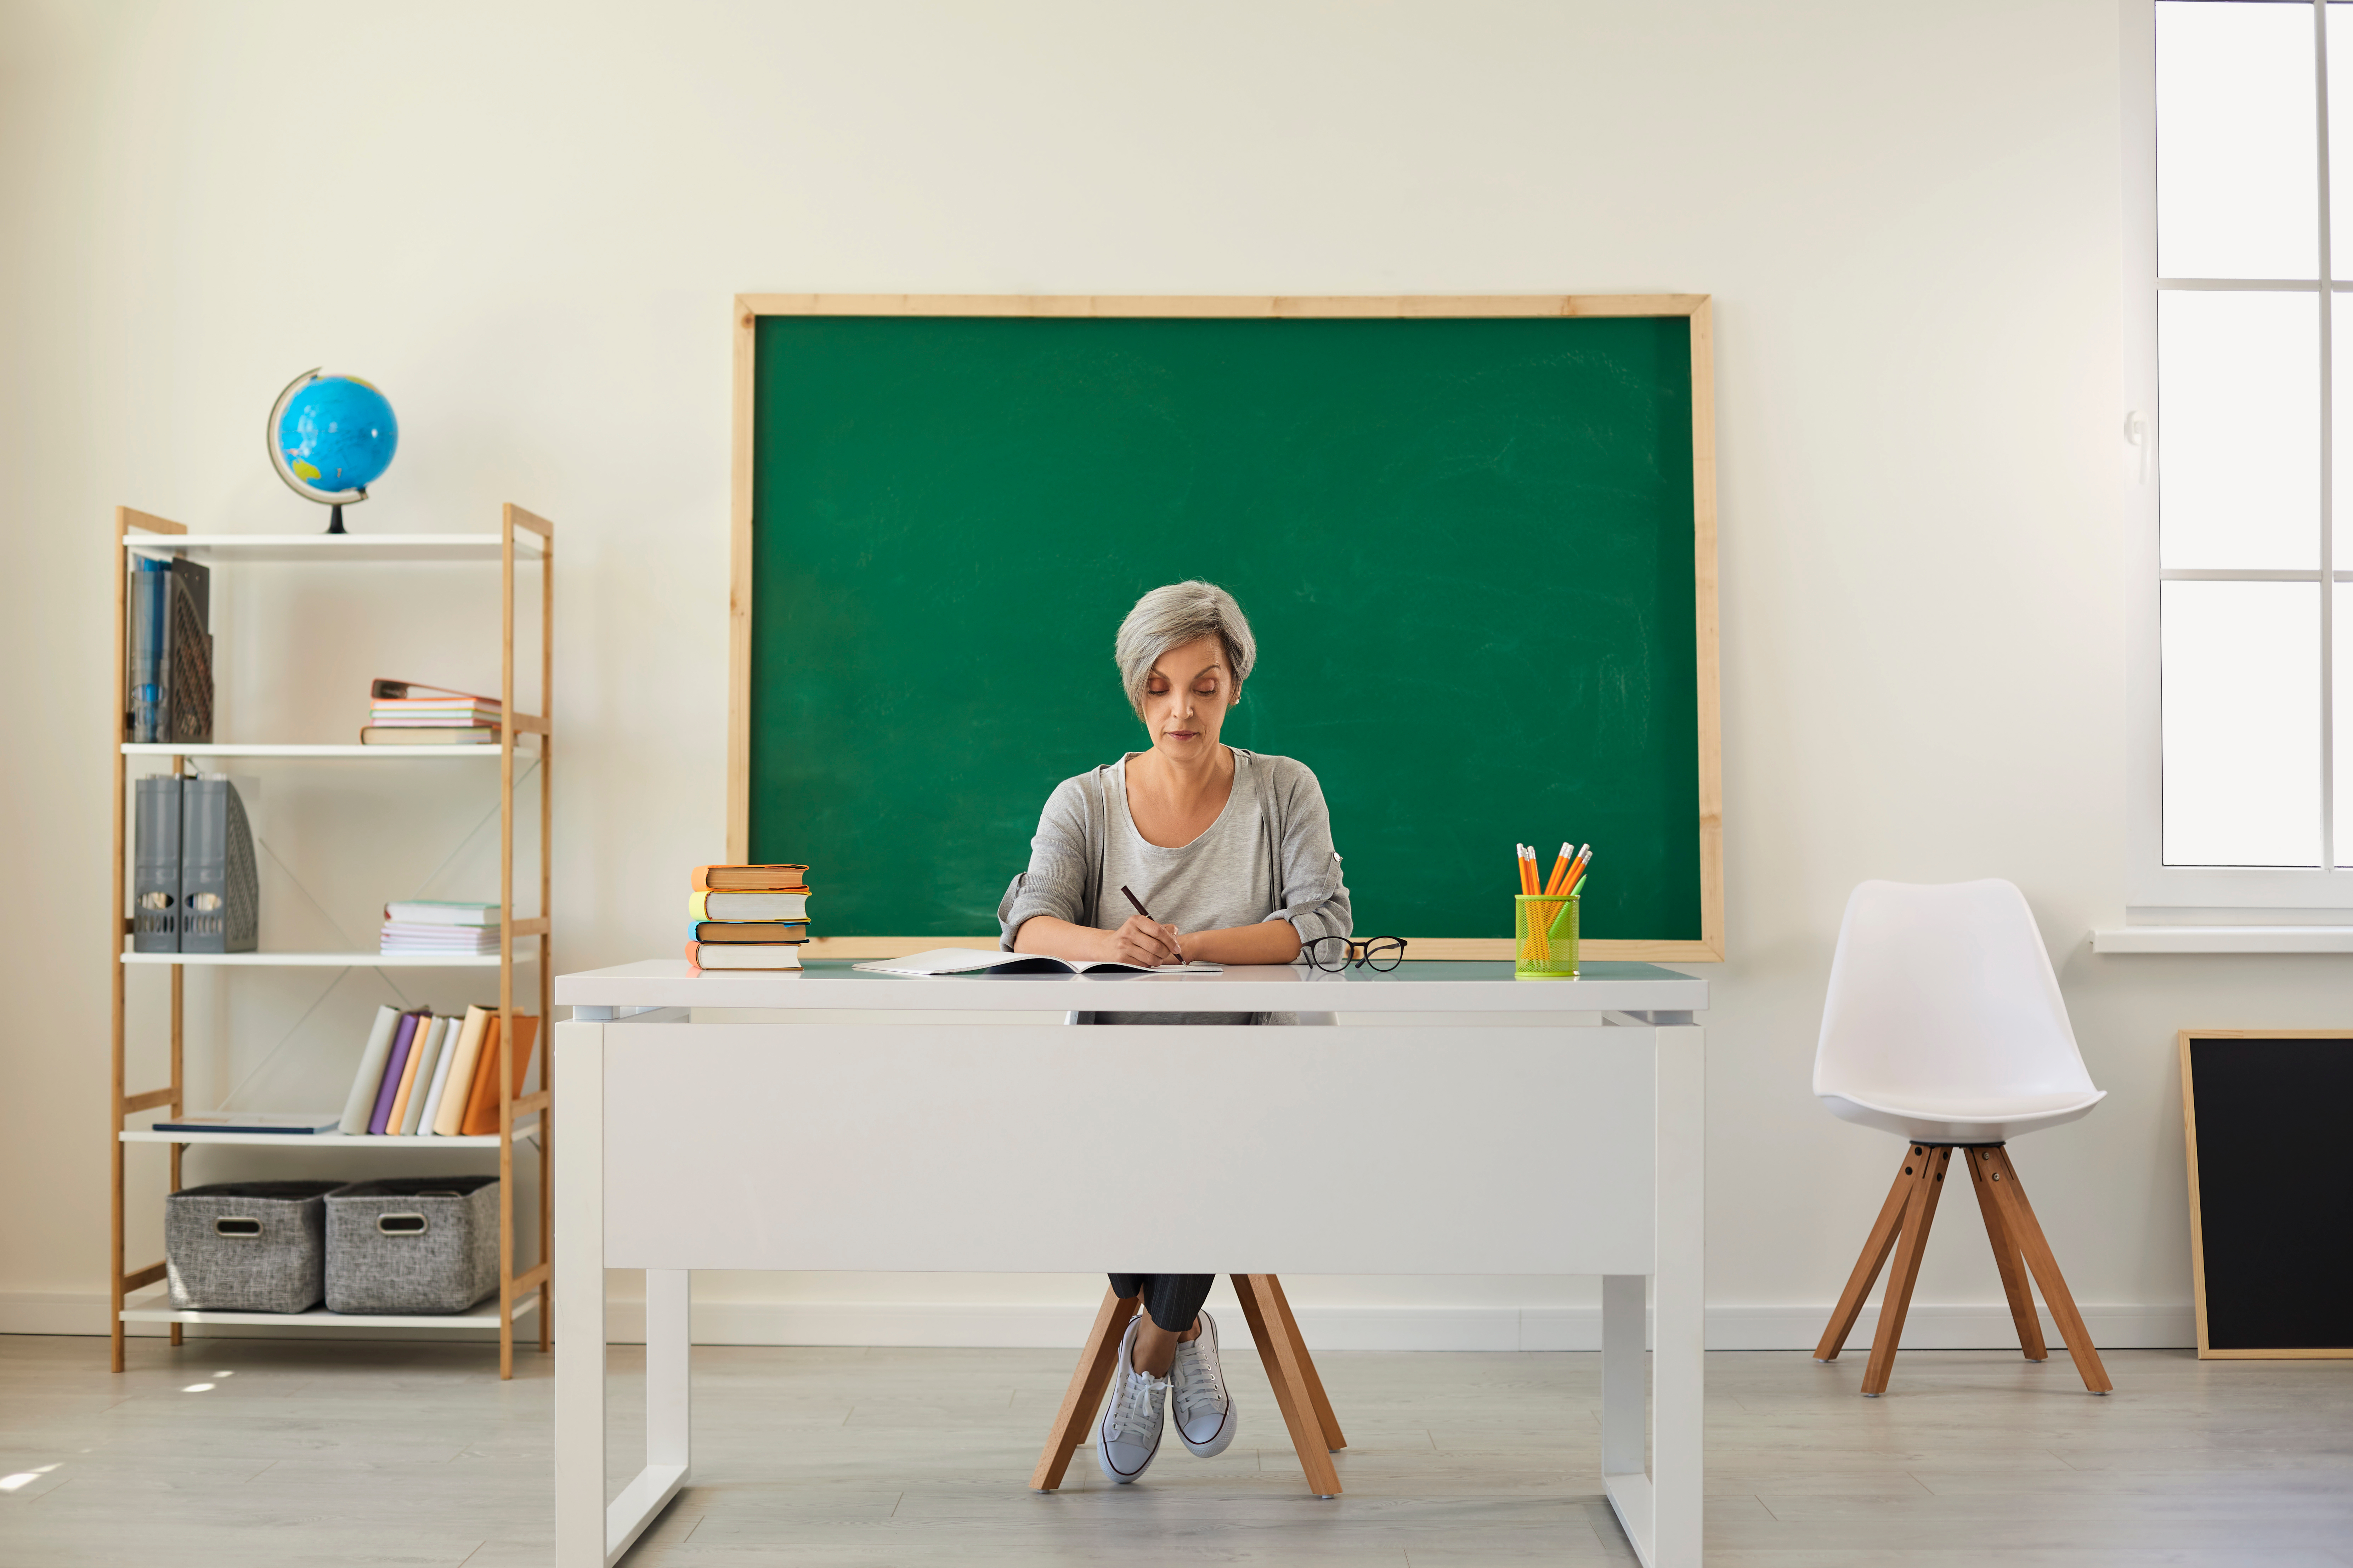 Teacher in an empty classroom | Source: Shutterstock